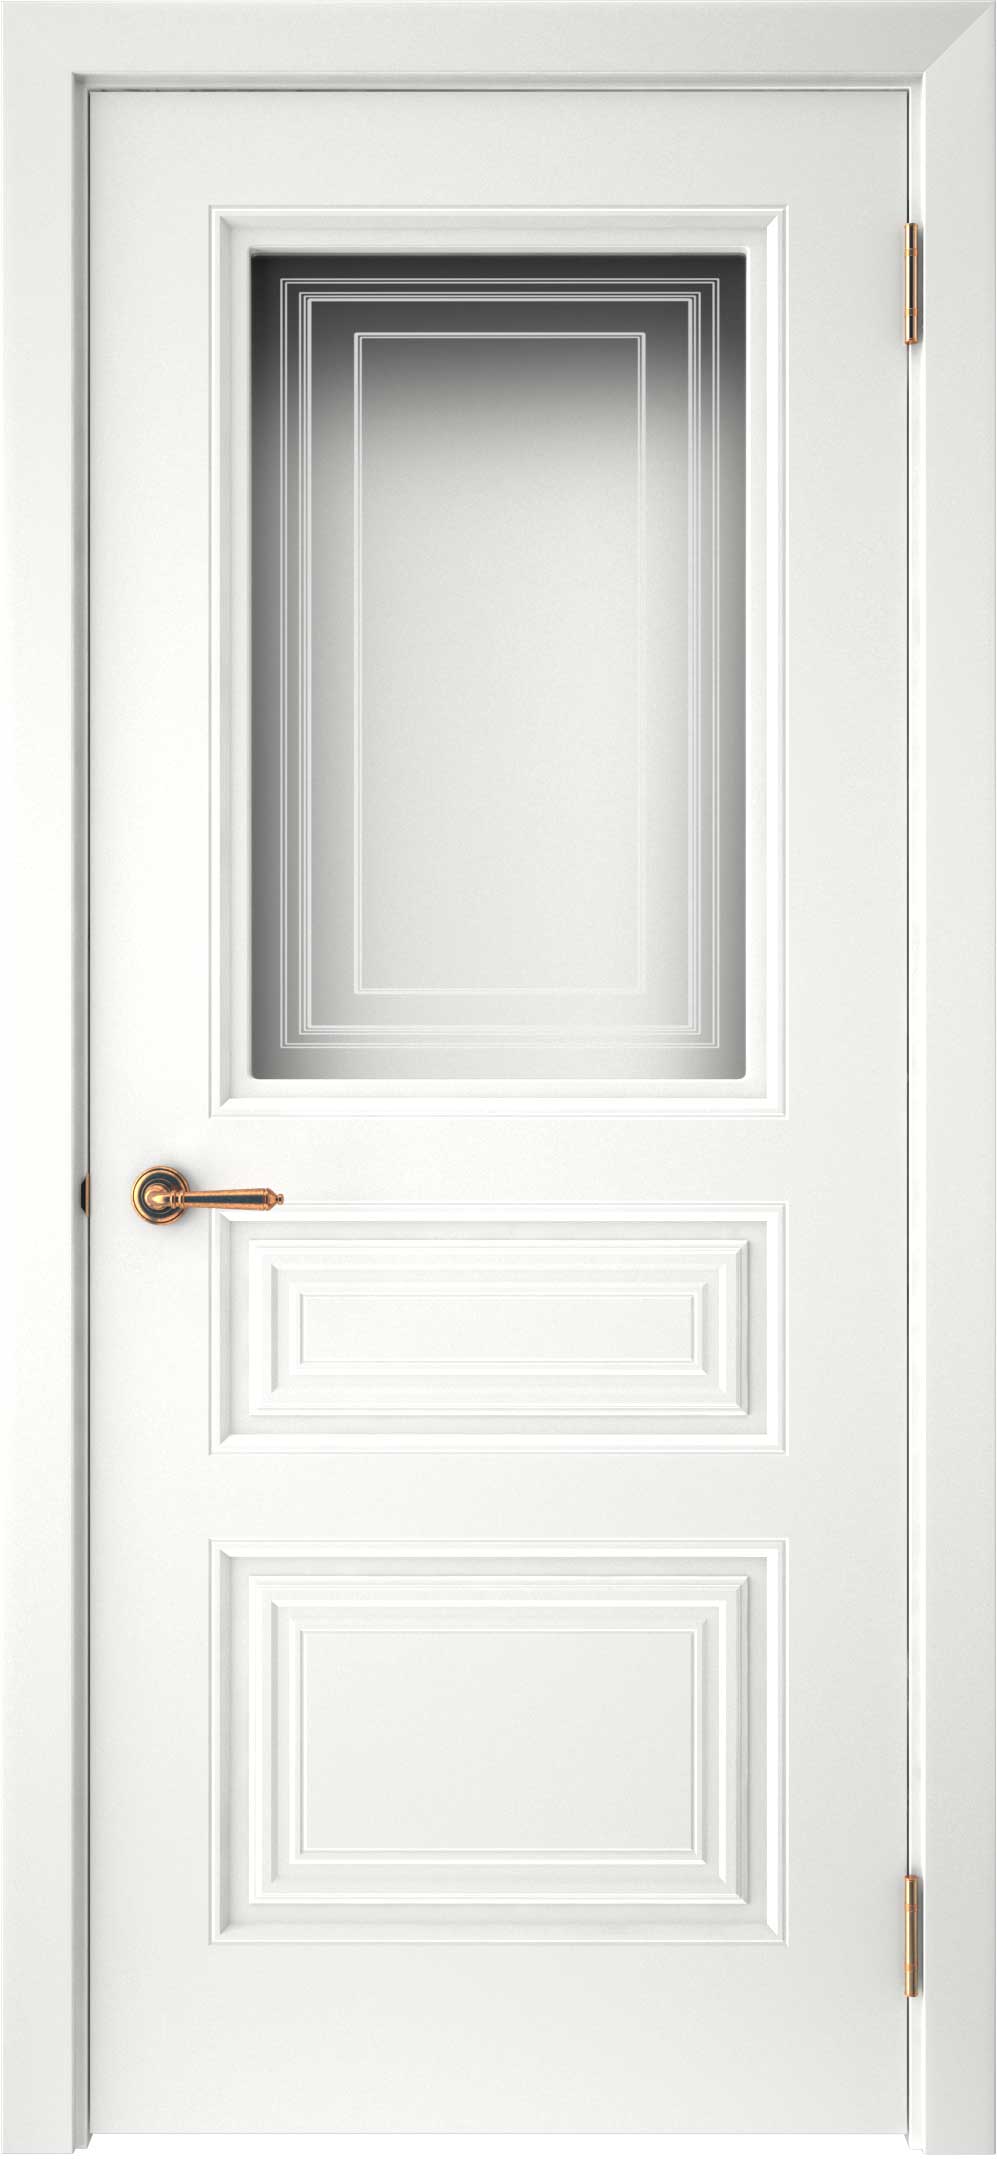 Двери крашеные (Эмаль) ТЕКОНА Смальта-44 со стеклом Белый ral размер 200 х 70 см. артикул F0000093304